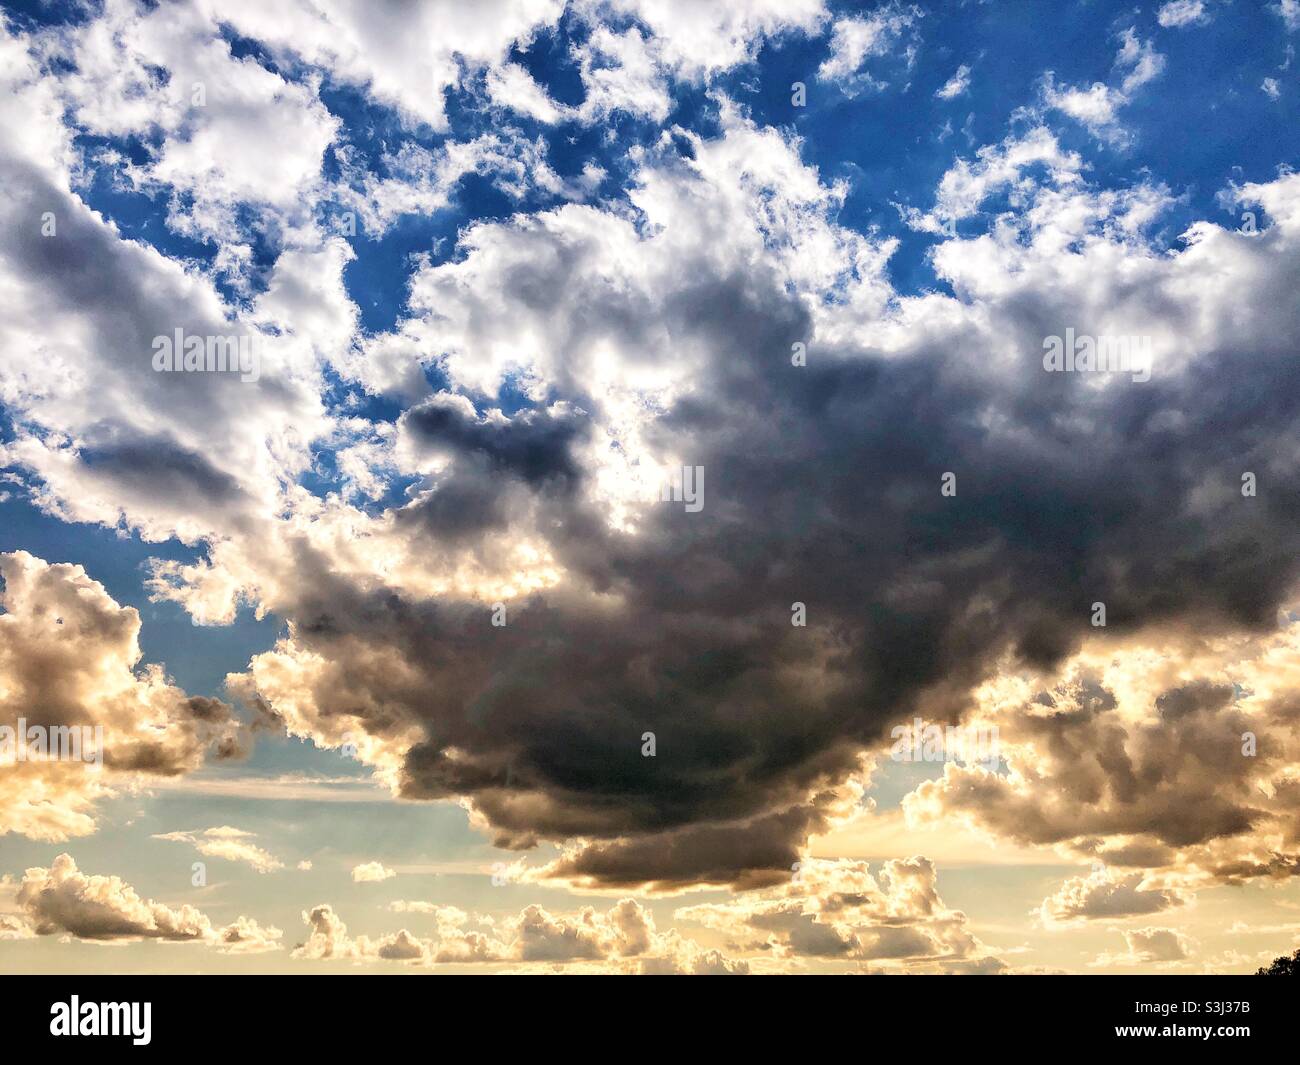 Nubes ominosas que llenan el cielo. Foto de stock